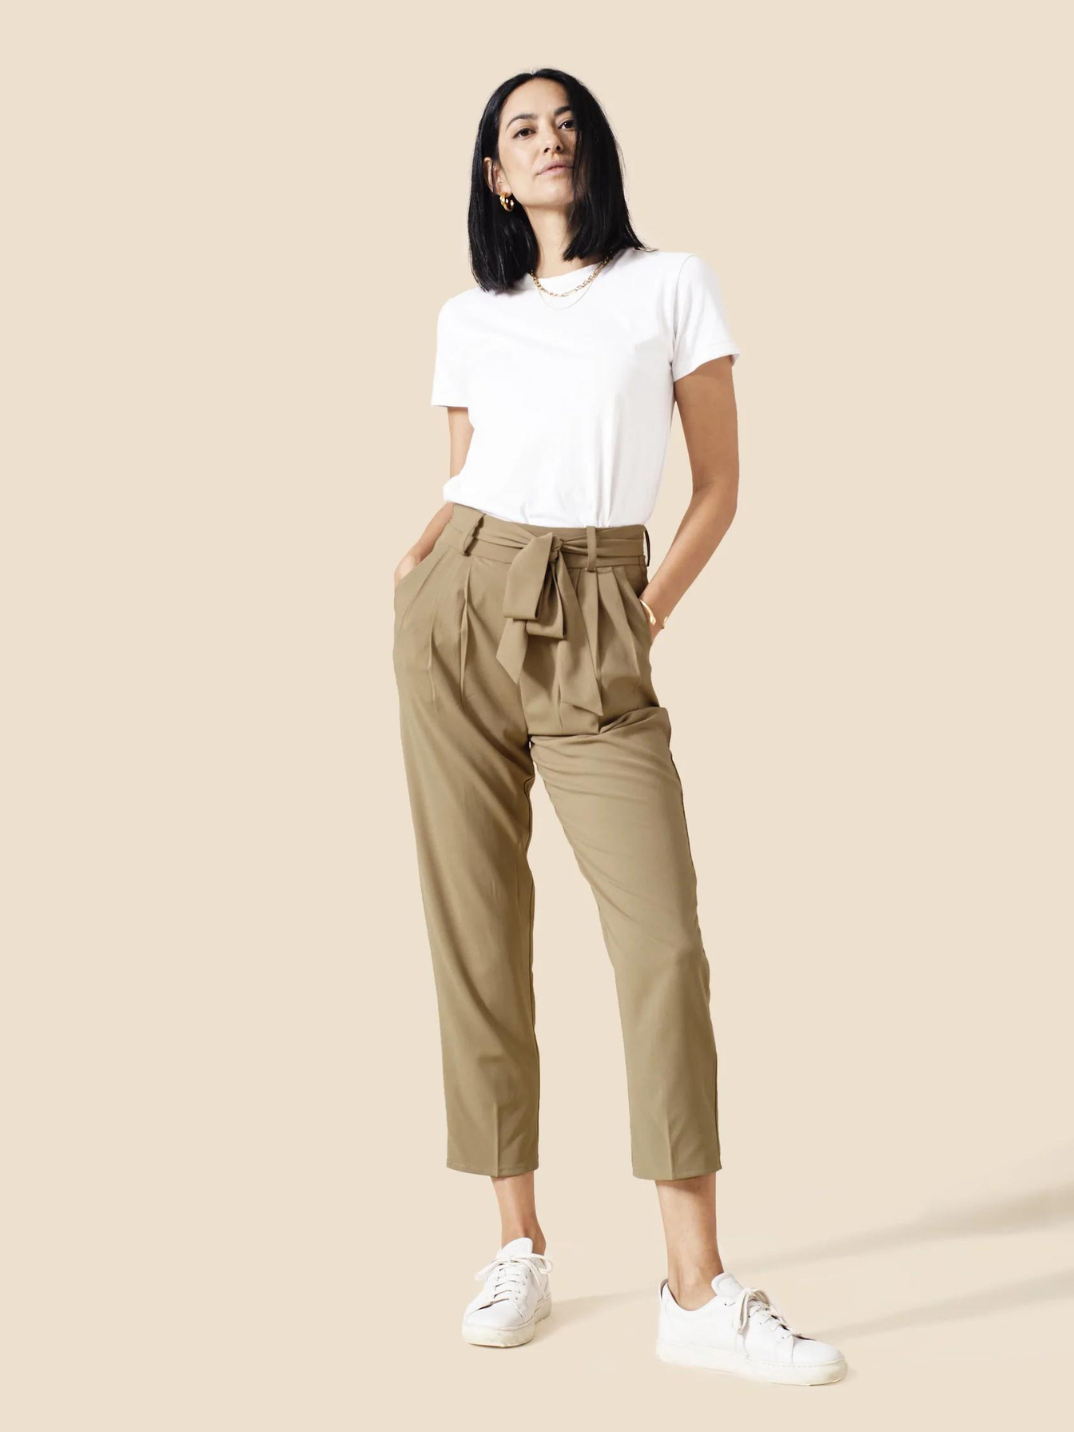 Work Cargo Pants Women's: Combine Comfort & Style!